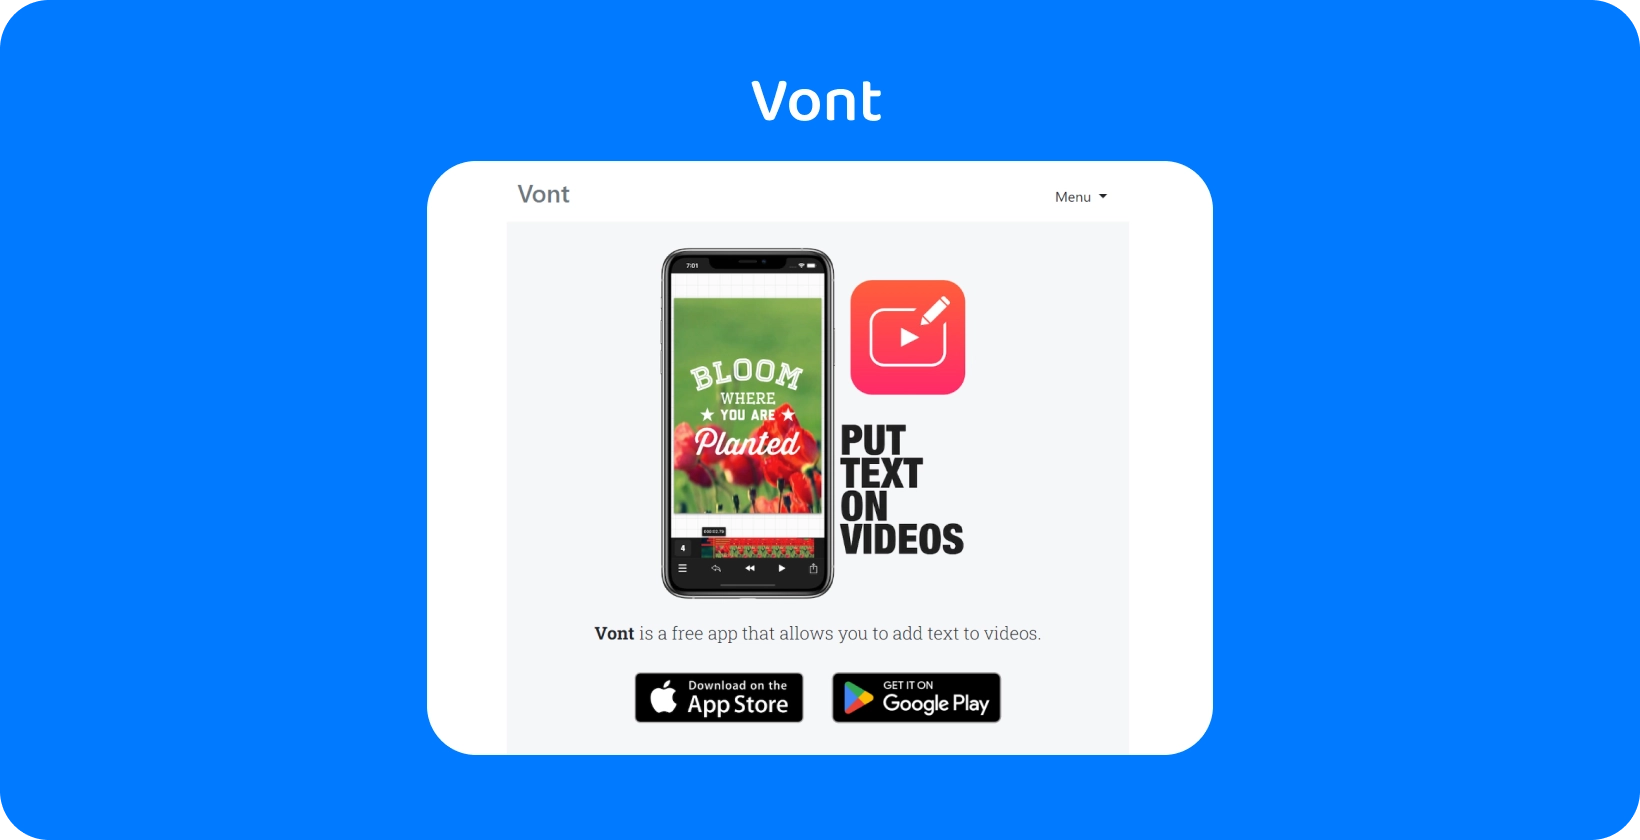 Smartphone que muestra la interfaz de la aplicación Vont, destacando su función para agregar texto en videos, disponible en App Store y Google Play